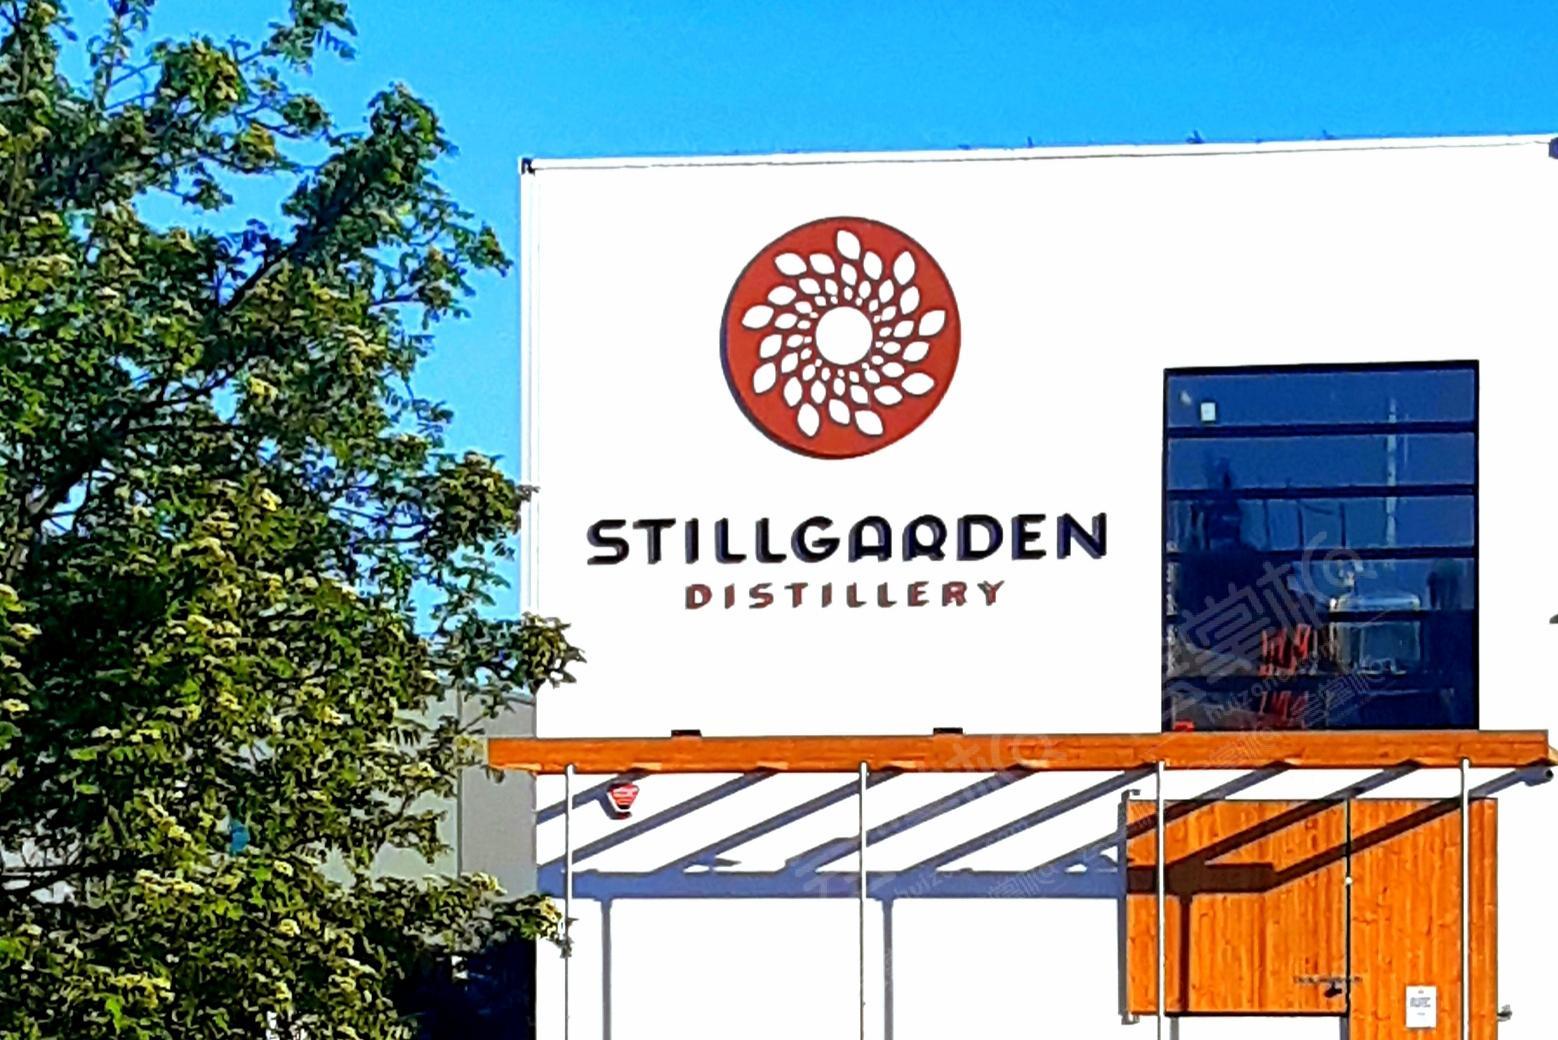 Stillgarden Distillery